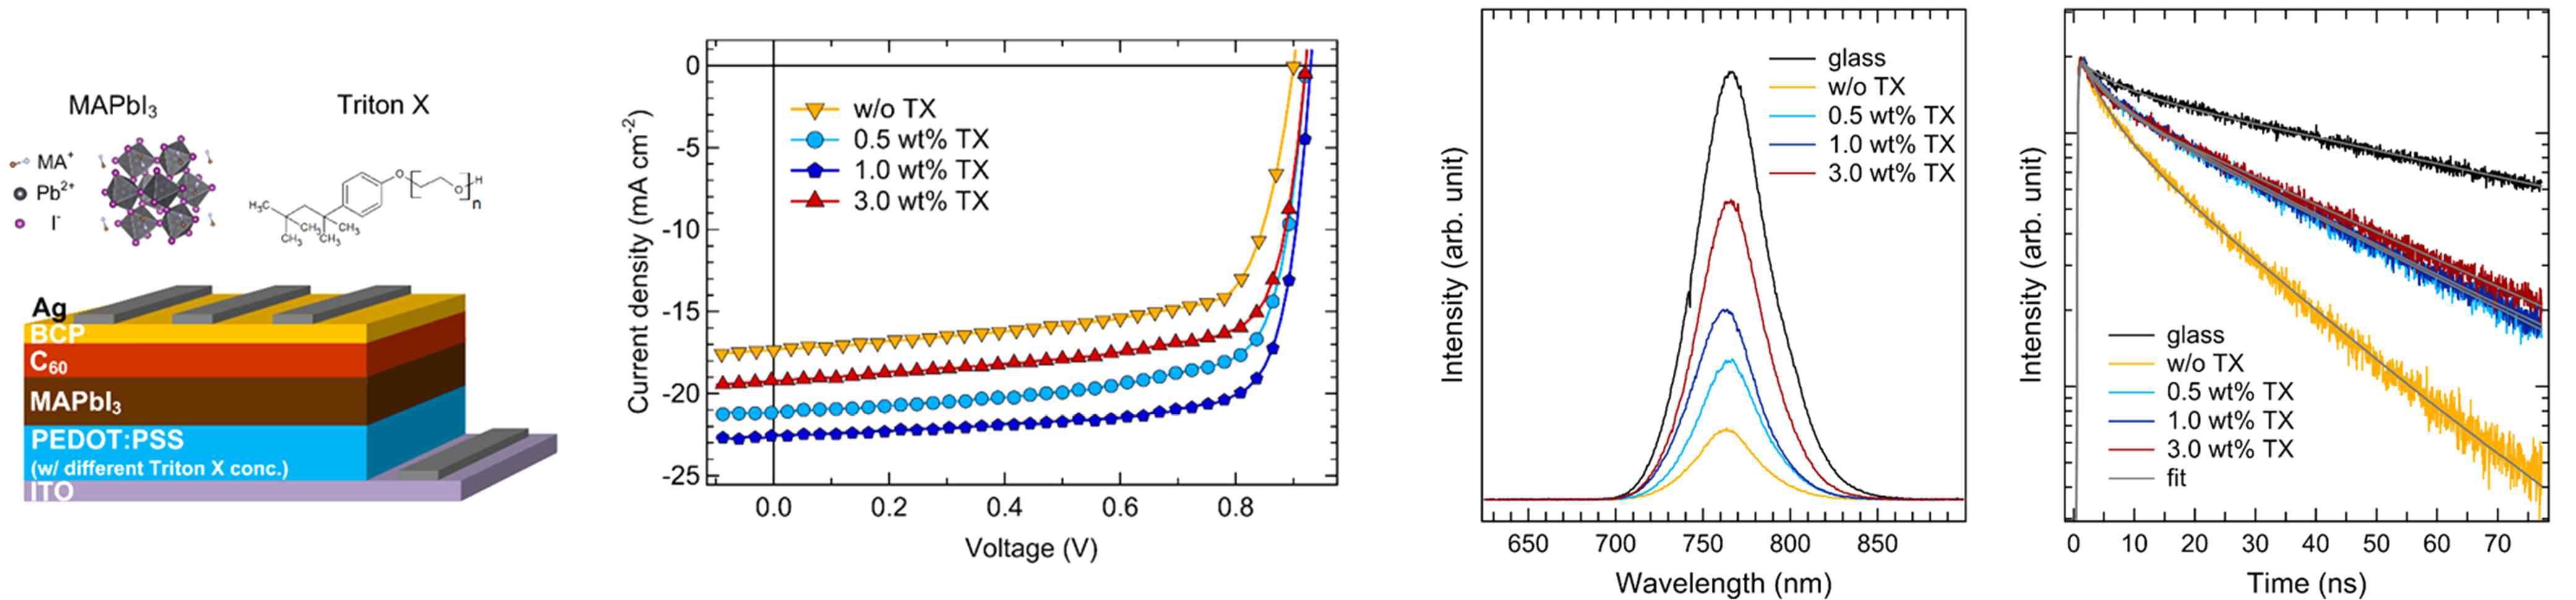 Triton X를 첨가한 PEDOT:PSS 정공수송층을 사용한 페로브스카이트 태양전지의 구조 및 빛 조사시 전류 밀도-전압 특성과 정상 상태 PL 스펙트럼 및 시간 분해 엑시톤 decay time 분석